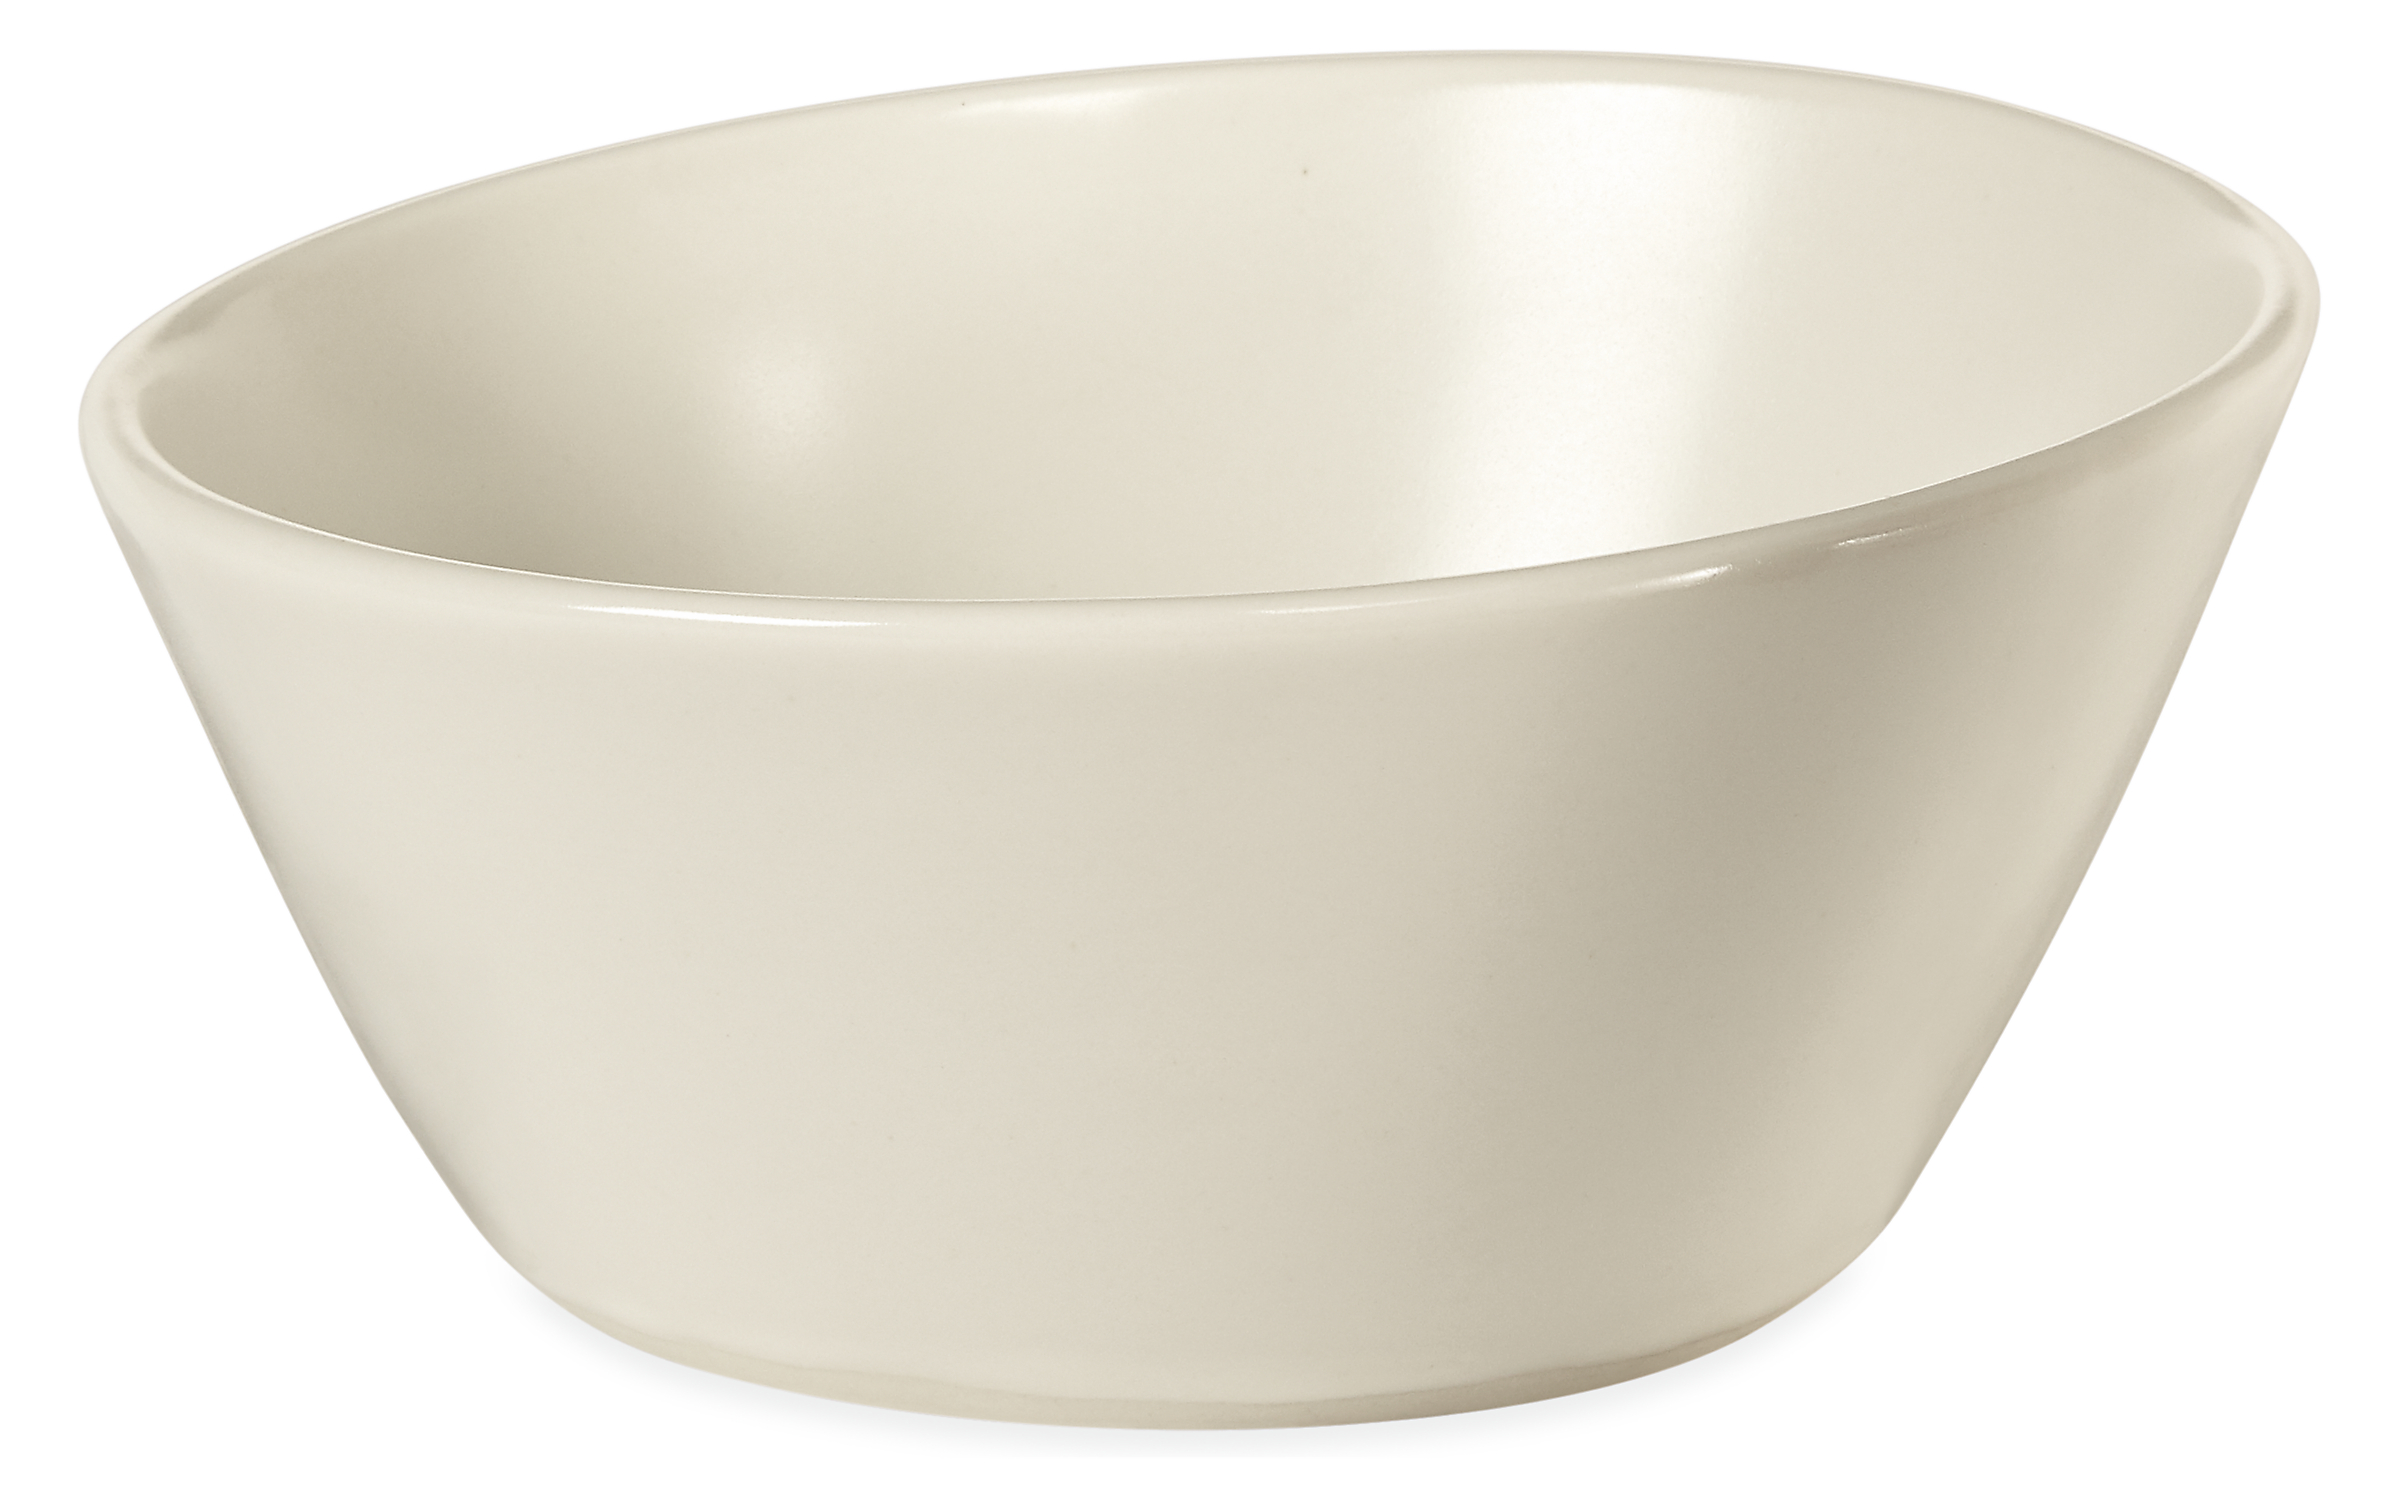 Nadia 5.5 diam Cereal Bowl in White